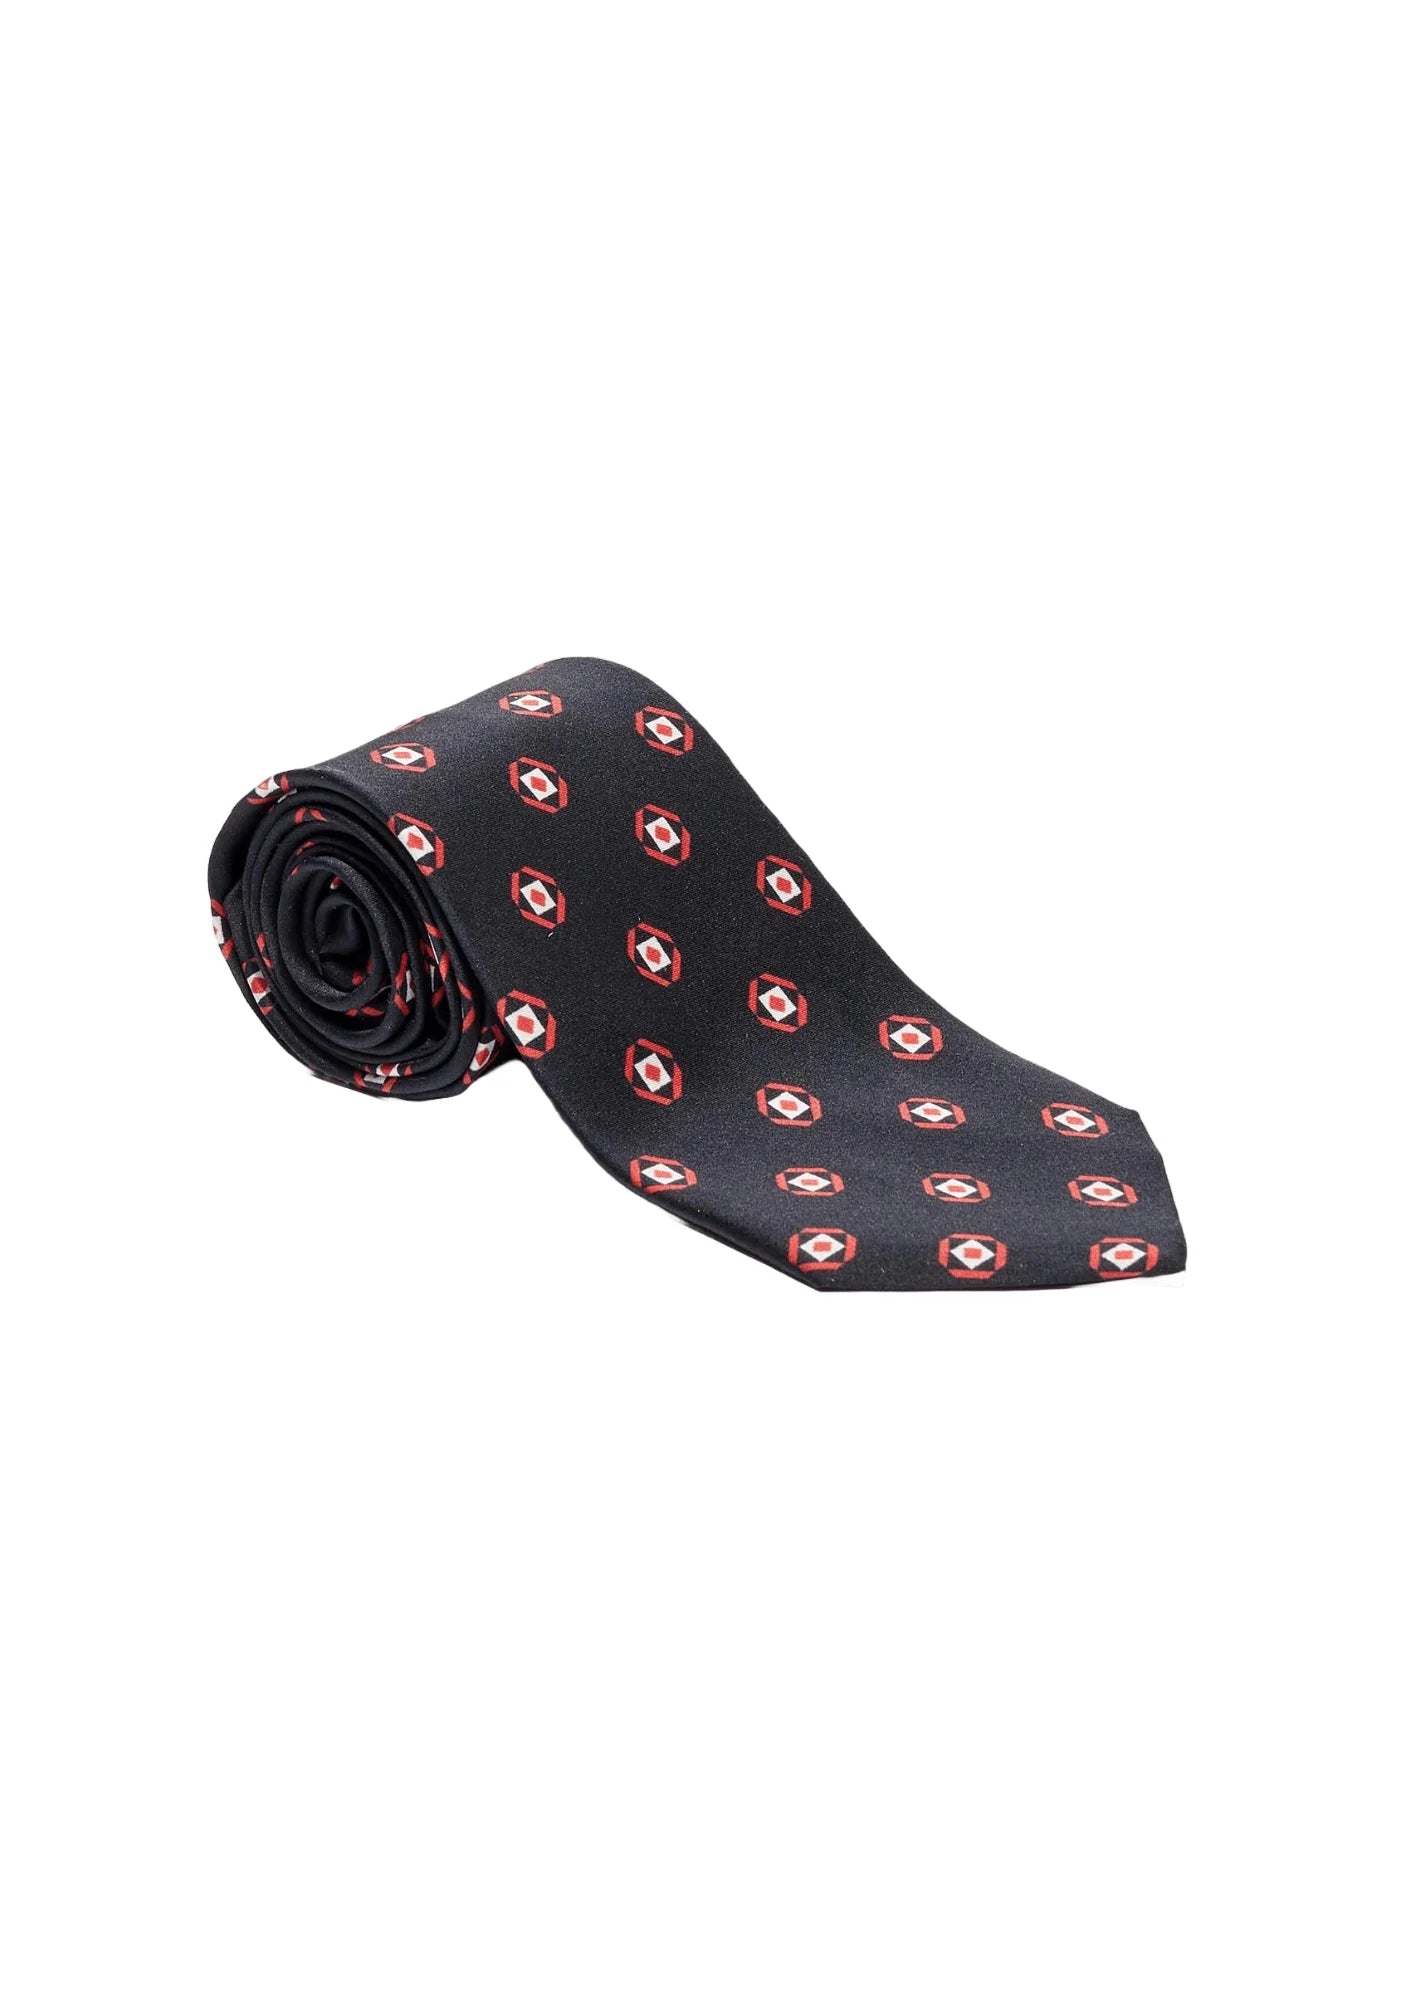 Cravate en soie noire avec motif rouge et blanc